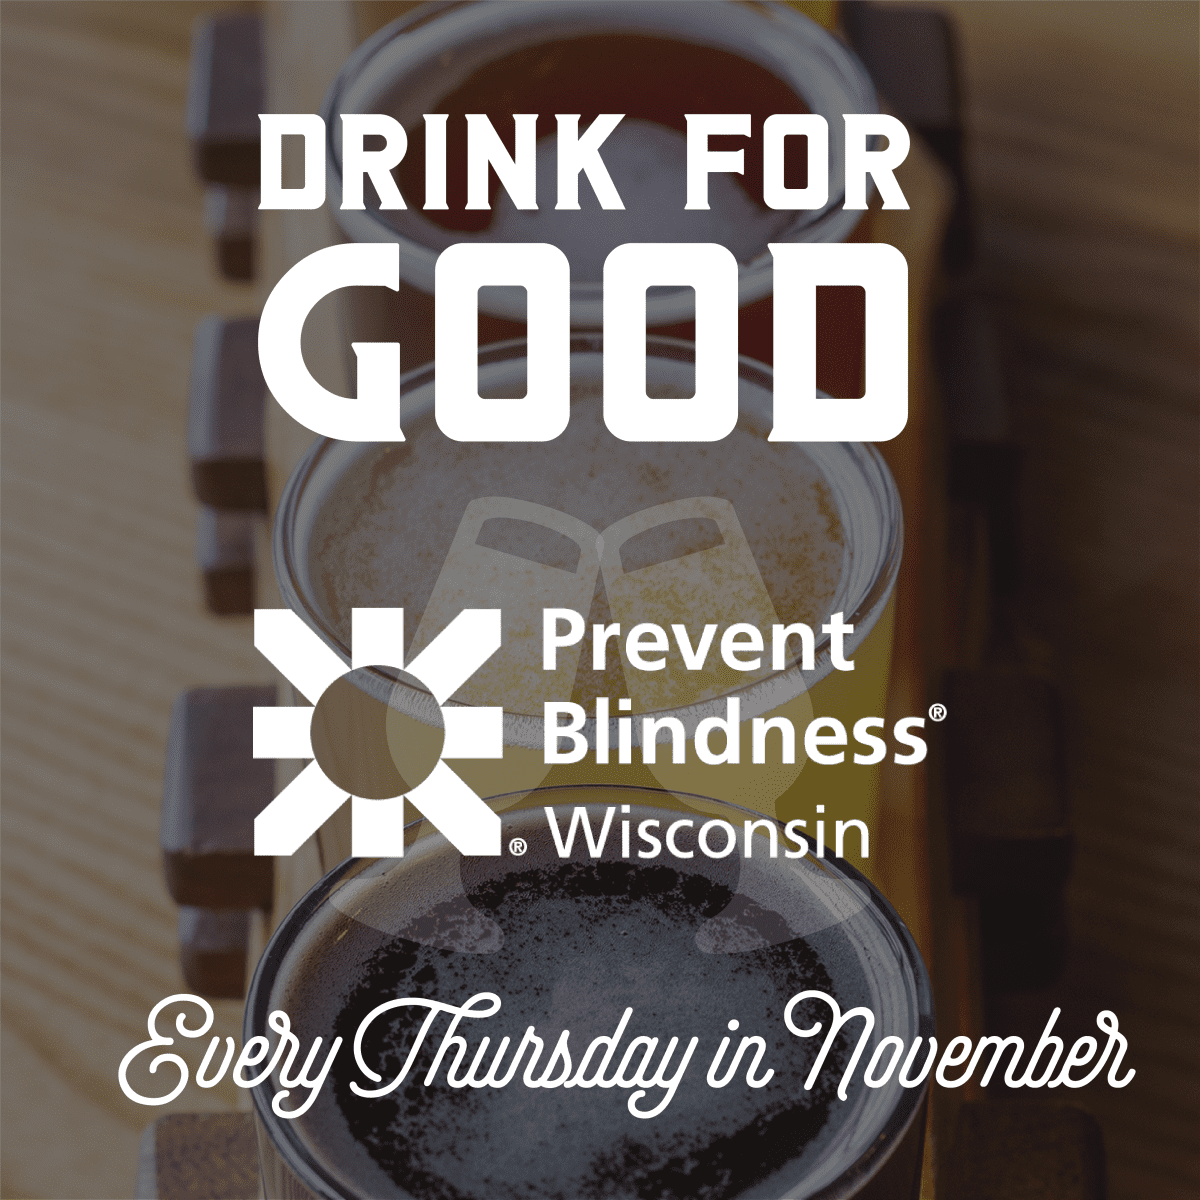 Flyer for the Drink for Good Prevent Blindness sponsor for every Thursday in November